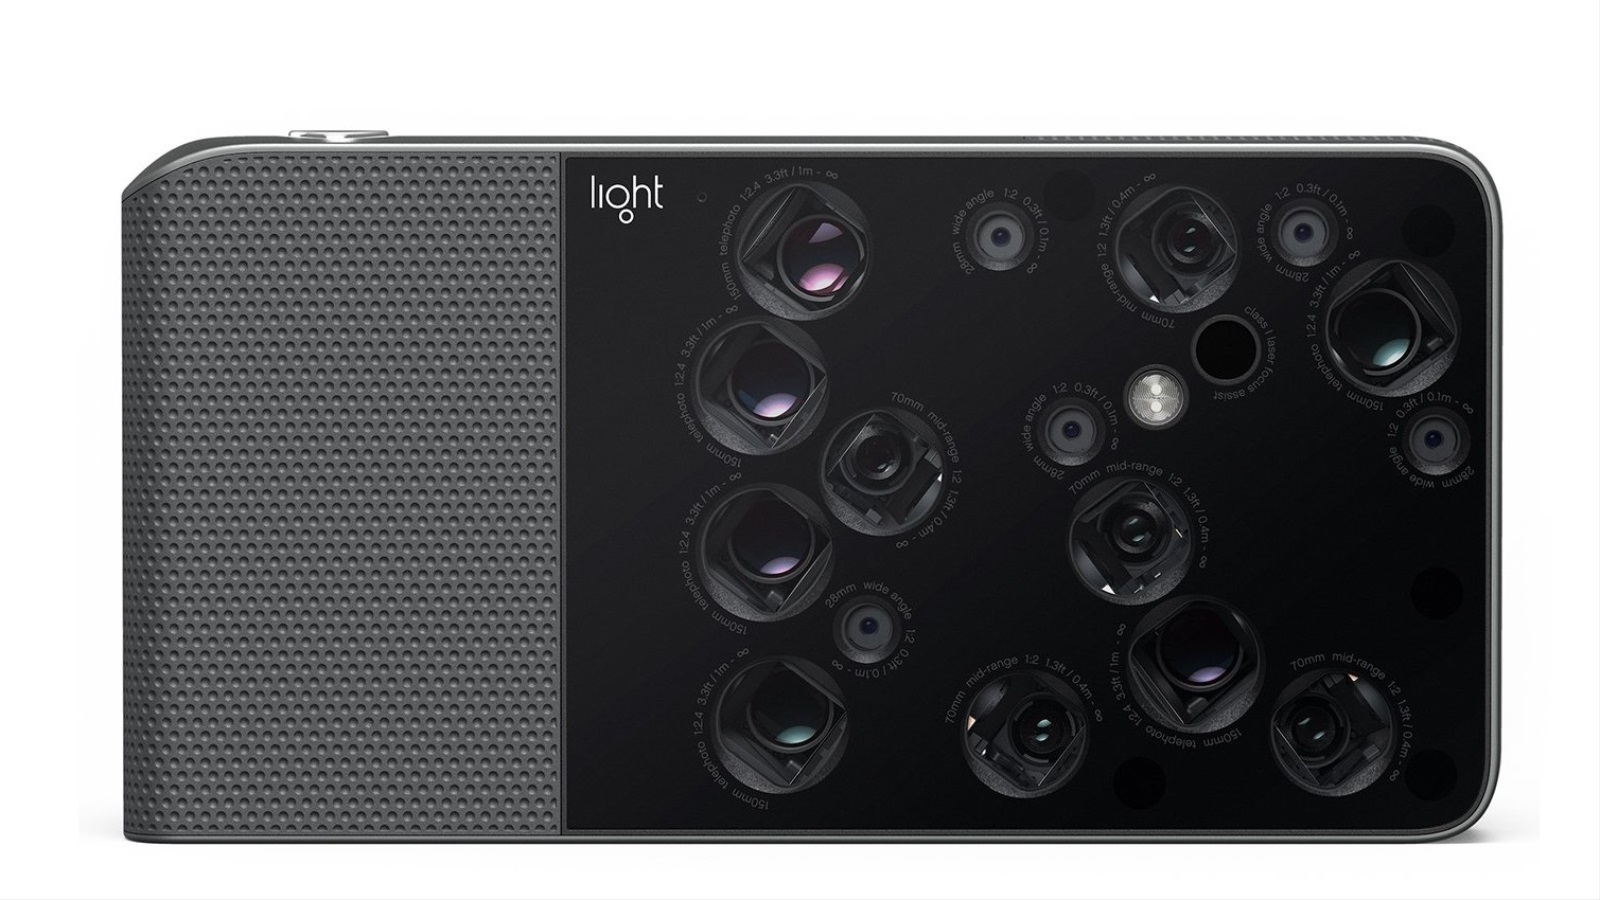 ‪جهاز أل16 لشركة لايت الذي يضم 16 كاميرا سيتوفر للشراء أواخر 2017‬ (لايت)